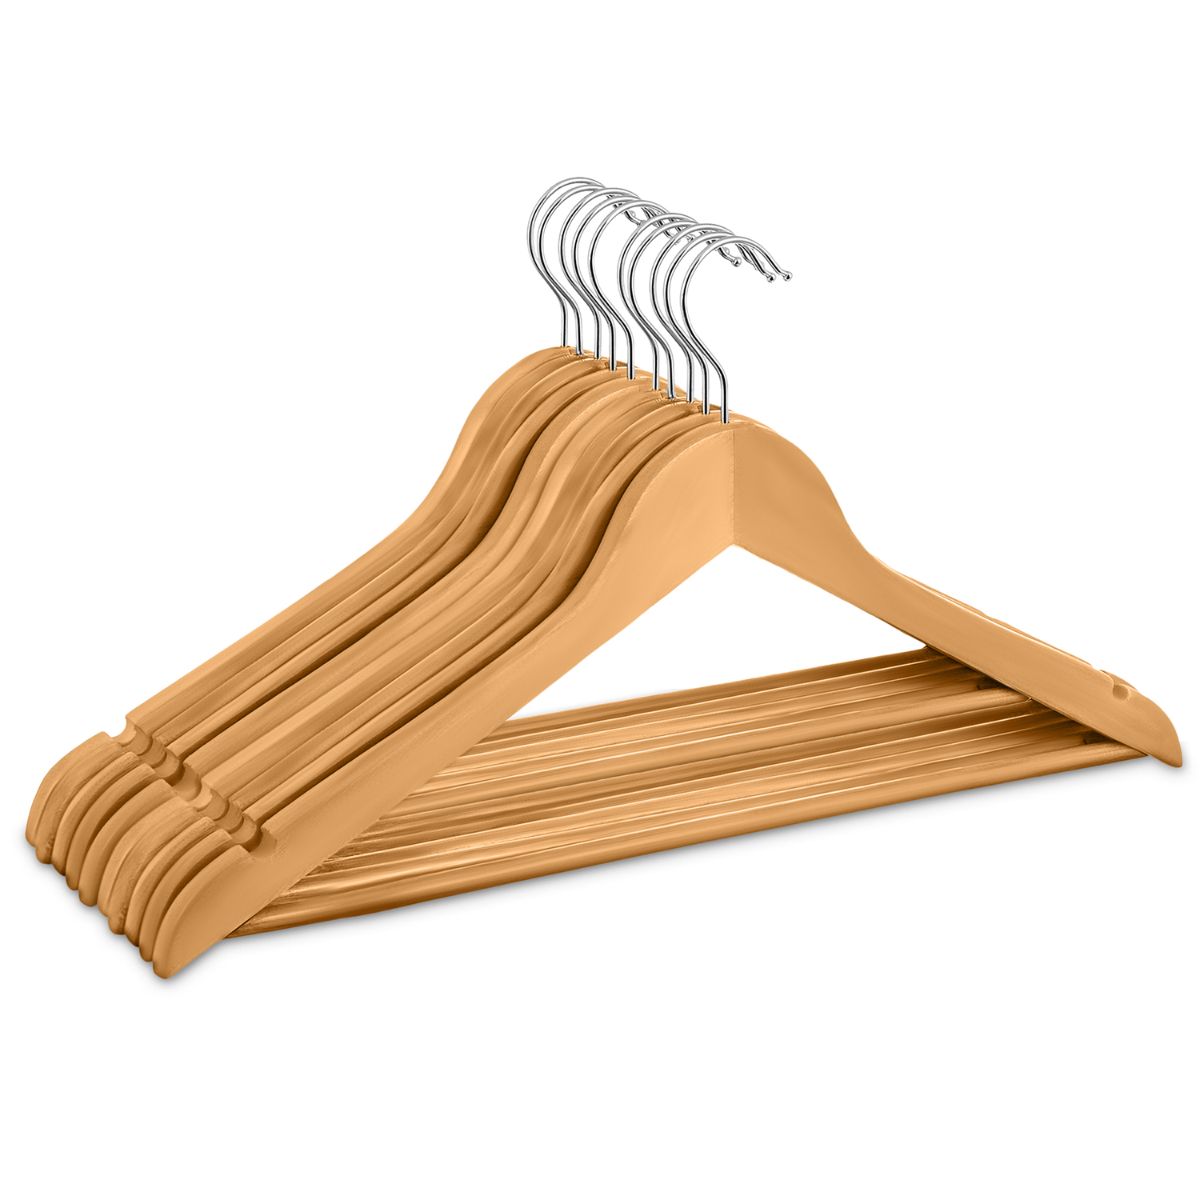 buy wooden clothes hangers